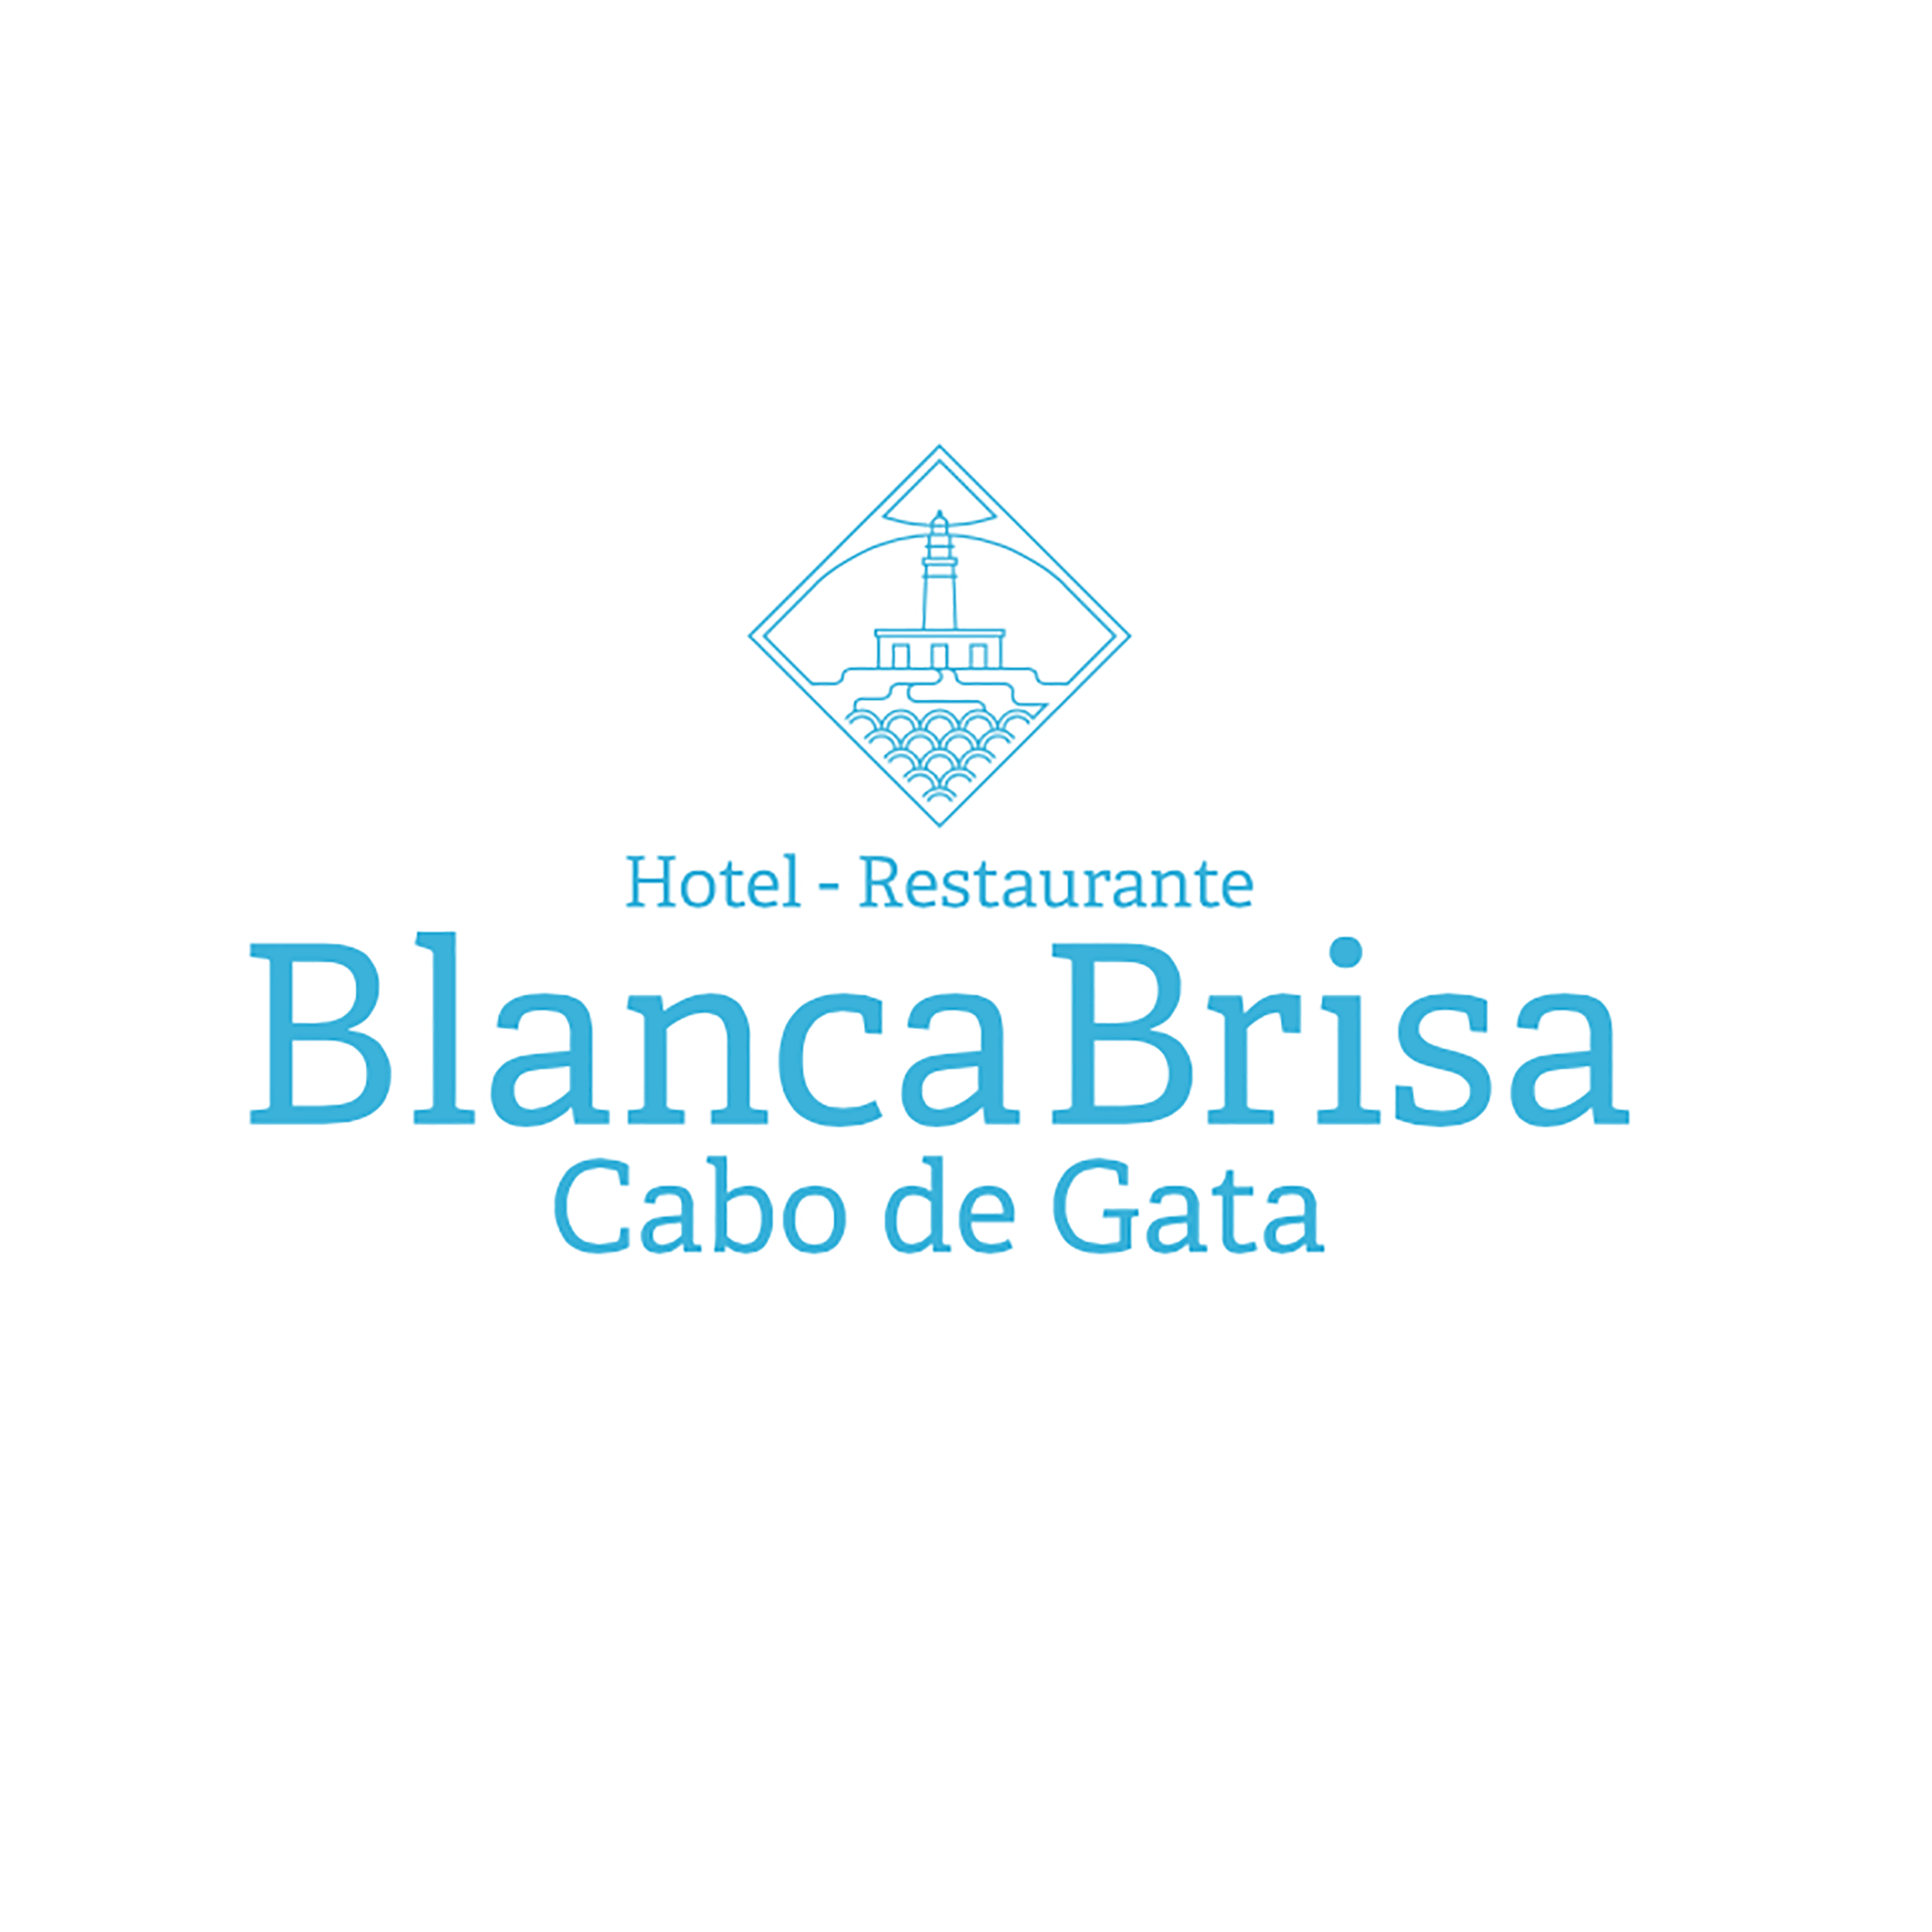 Restaurante Hotel Blanca Brisa Cabo de Gata Logo